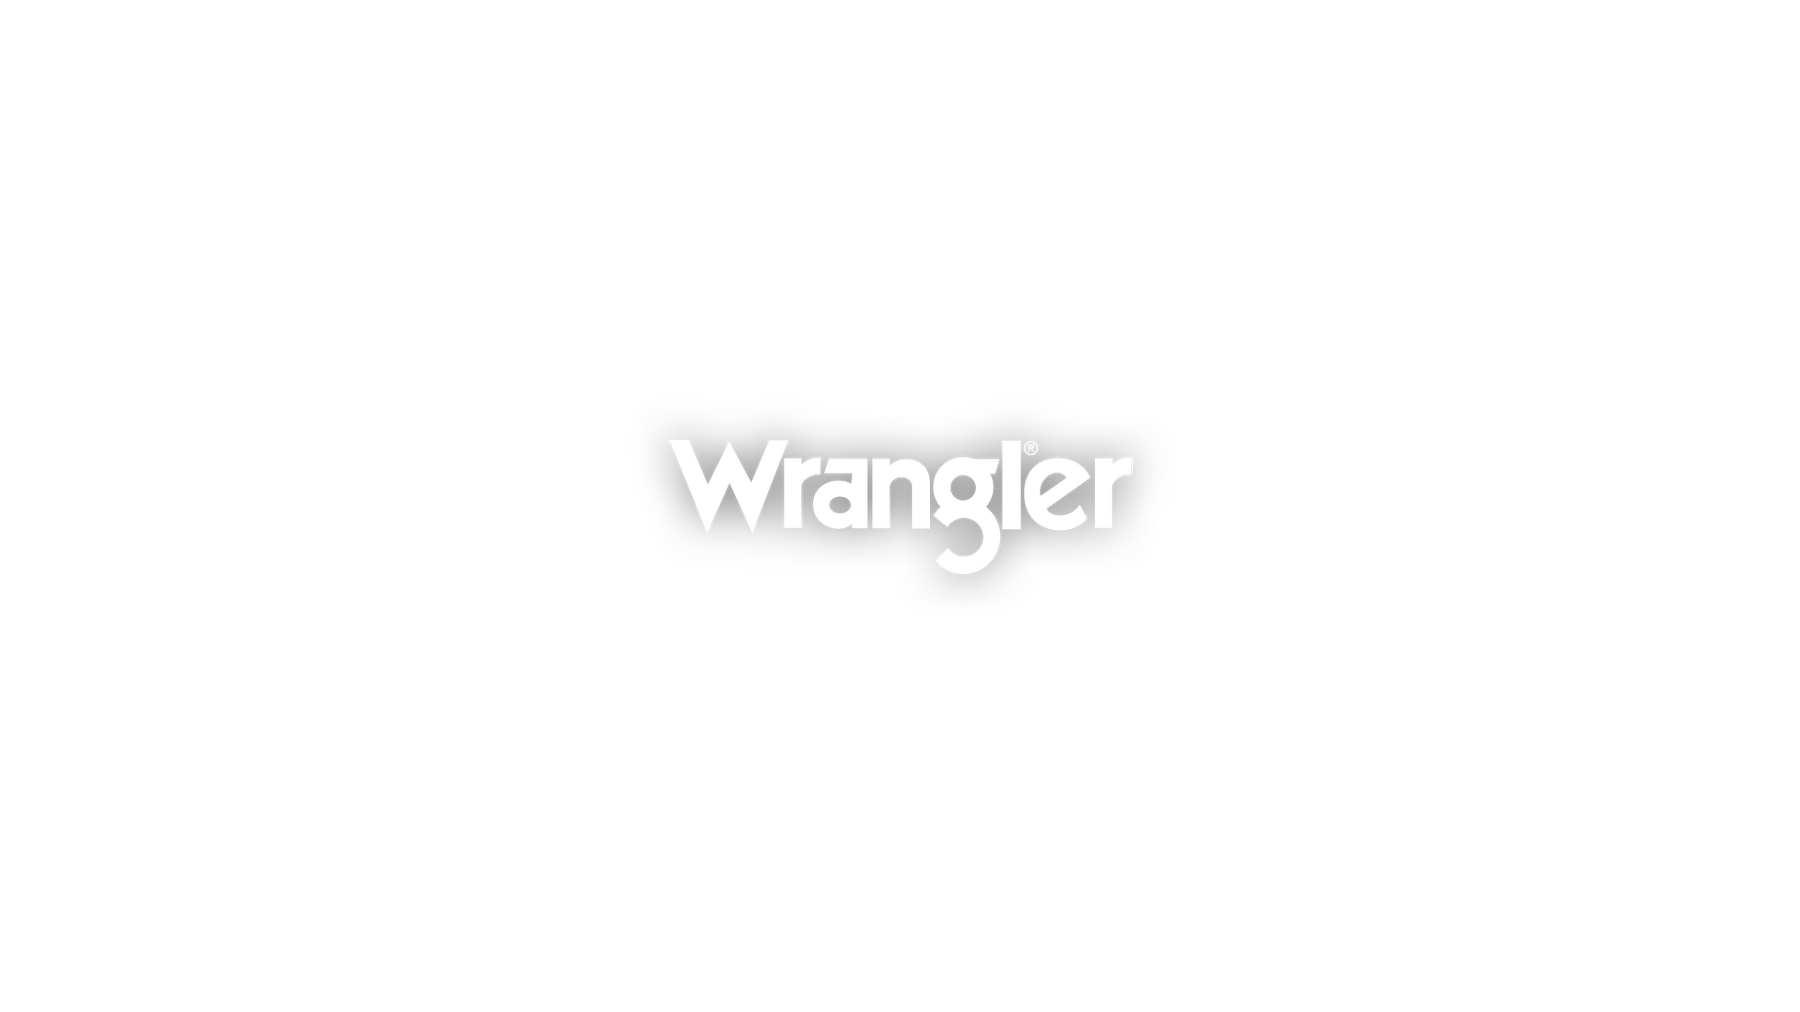 Wrangler logo center